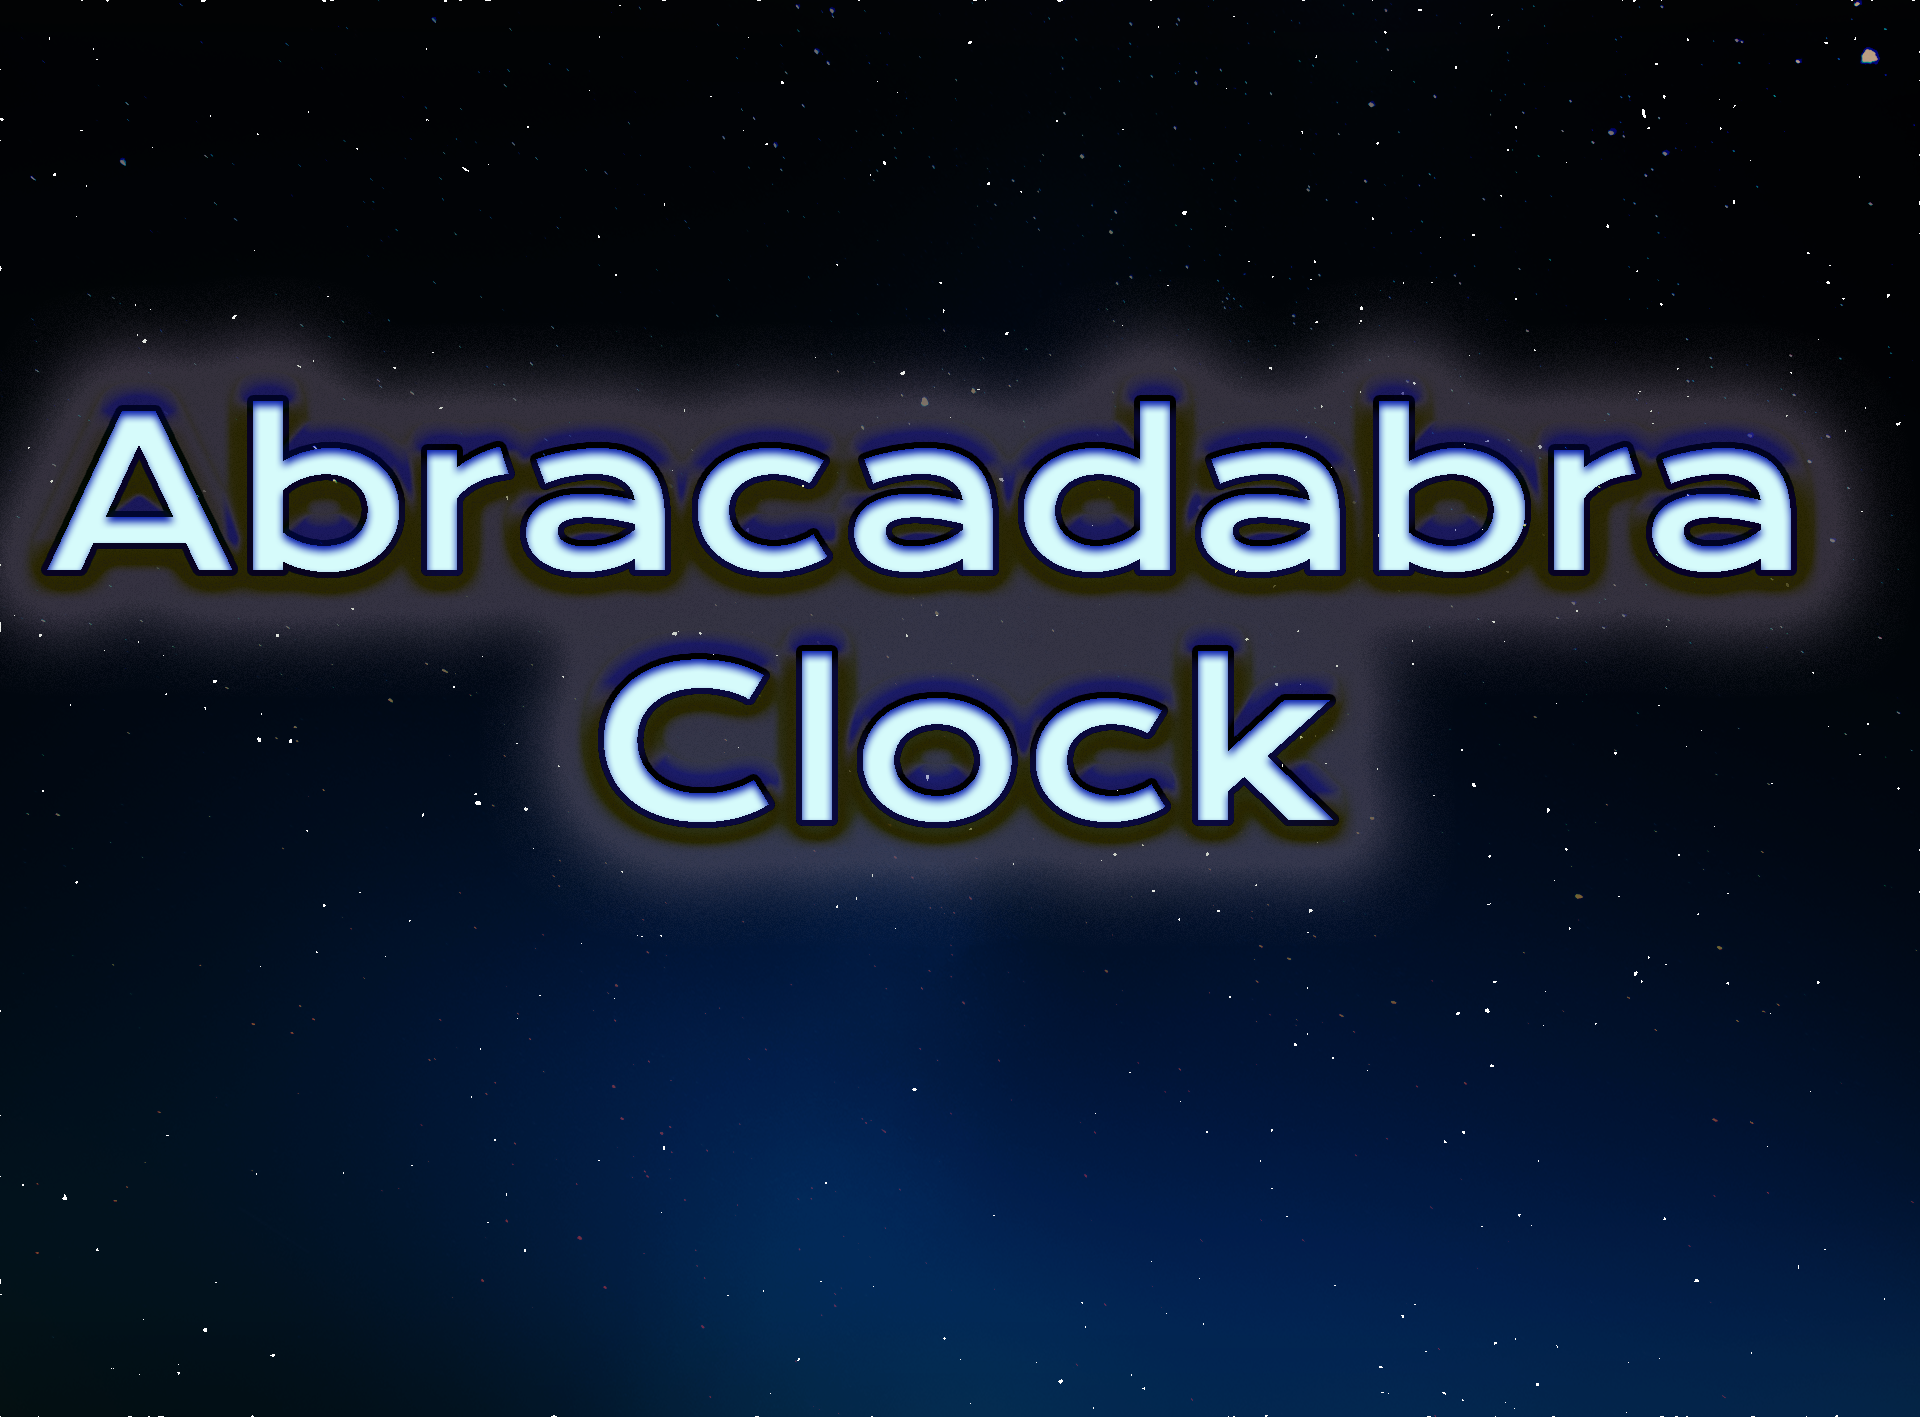 The Abracadabra Clock